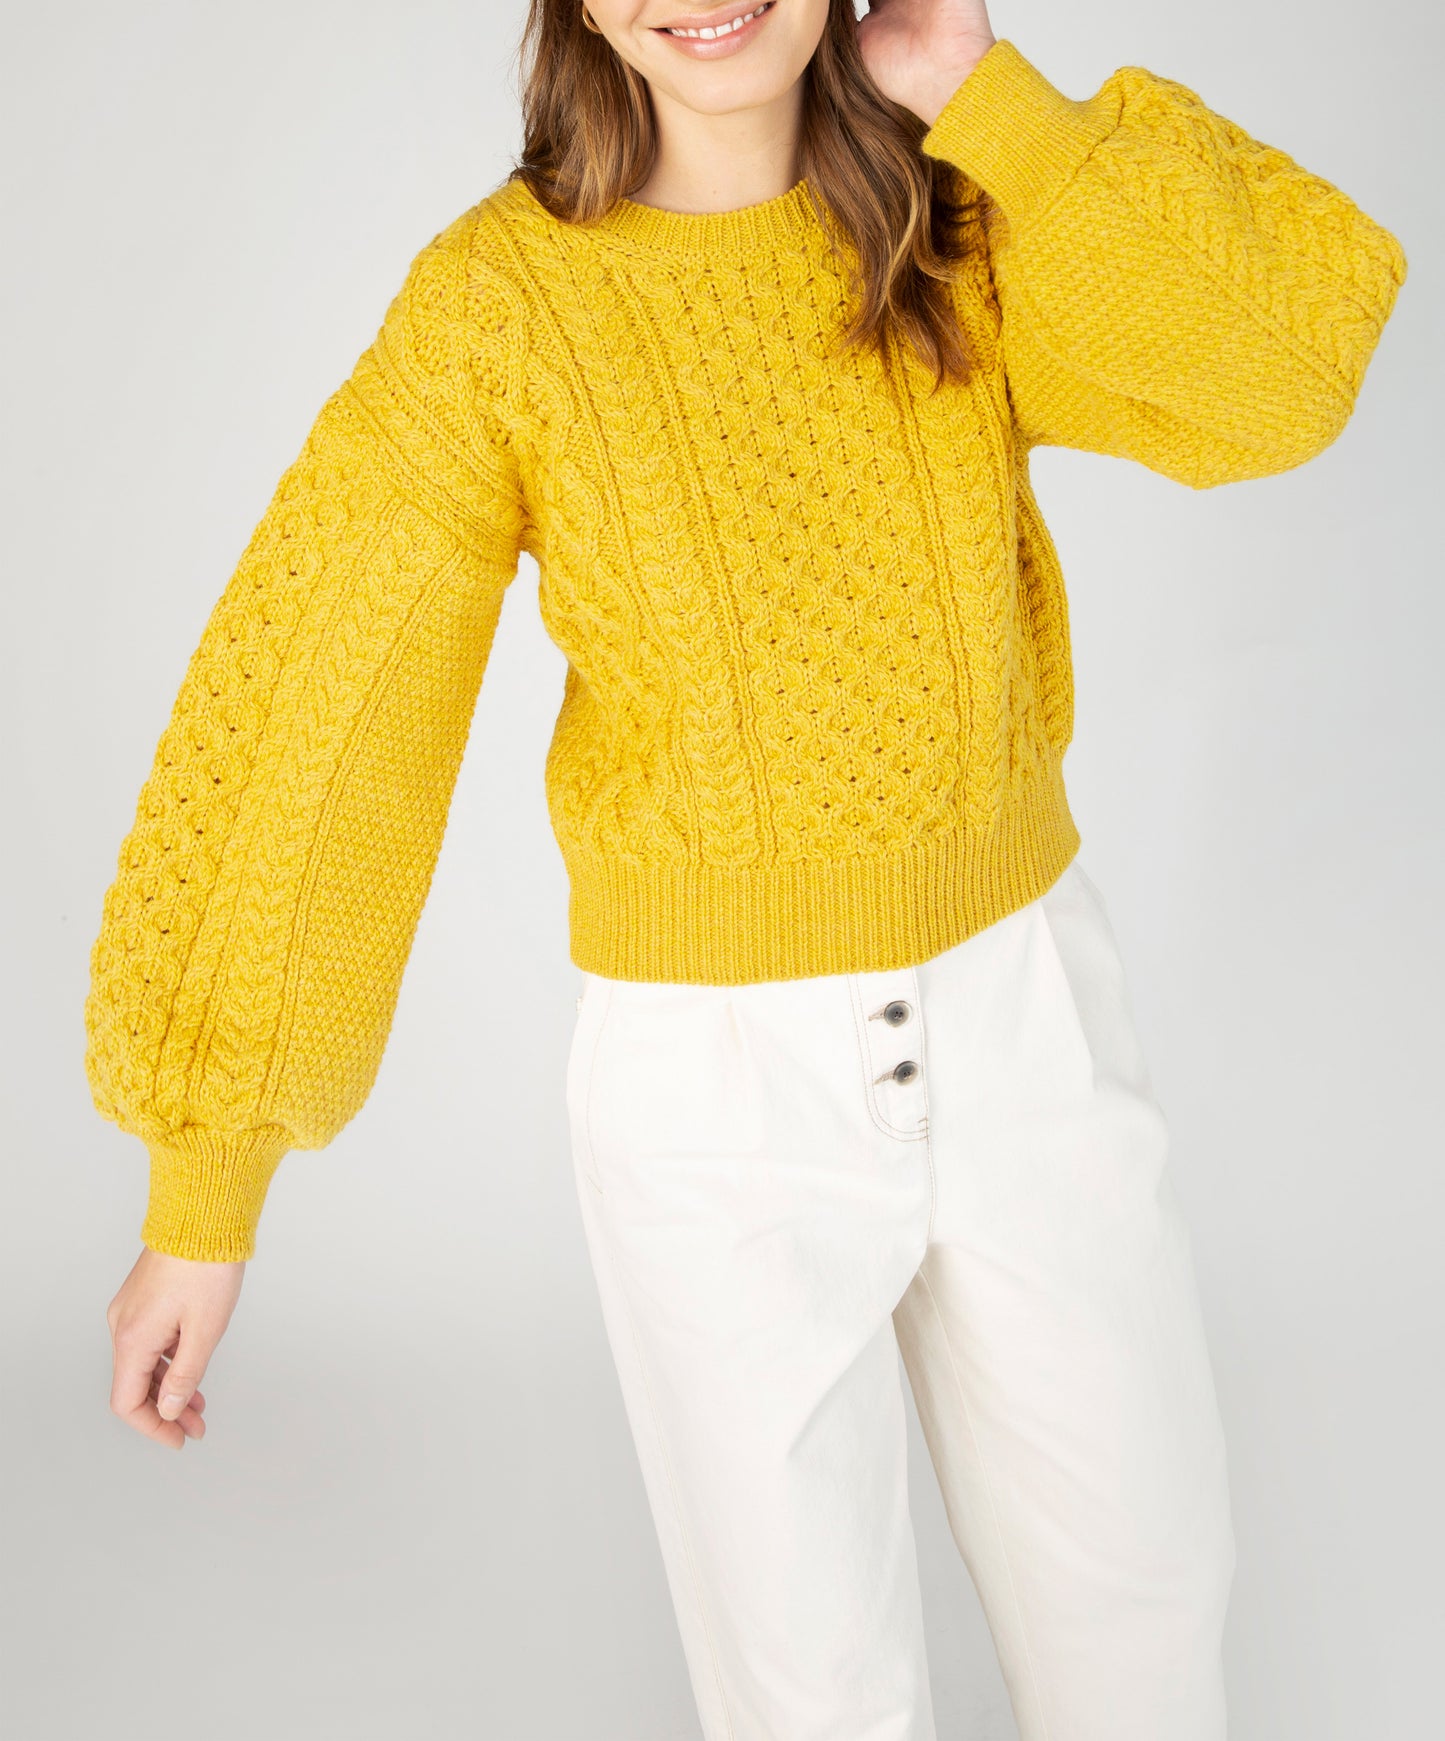 IrelandsEye Knitwear Honeysuckle Cropped Aran Sweater Sunflower